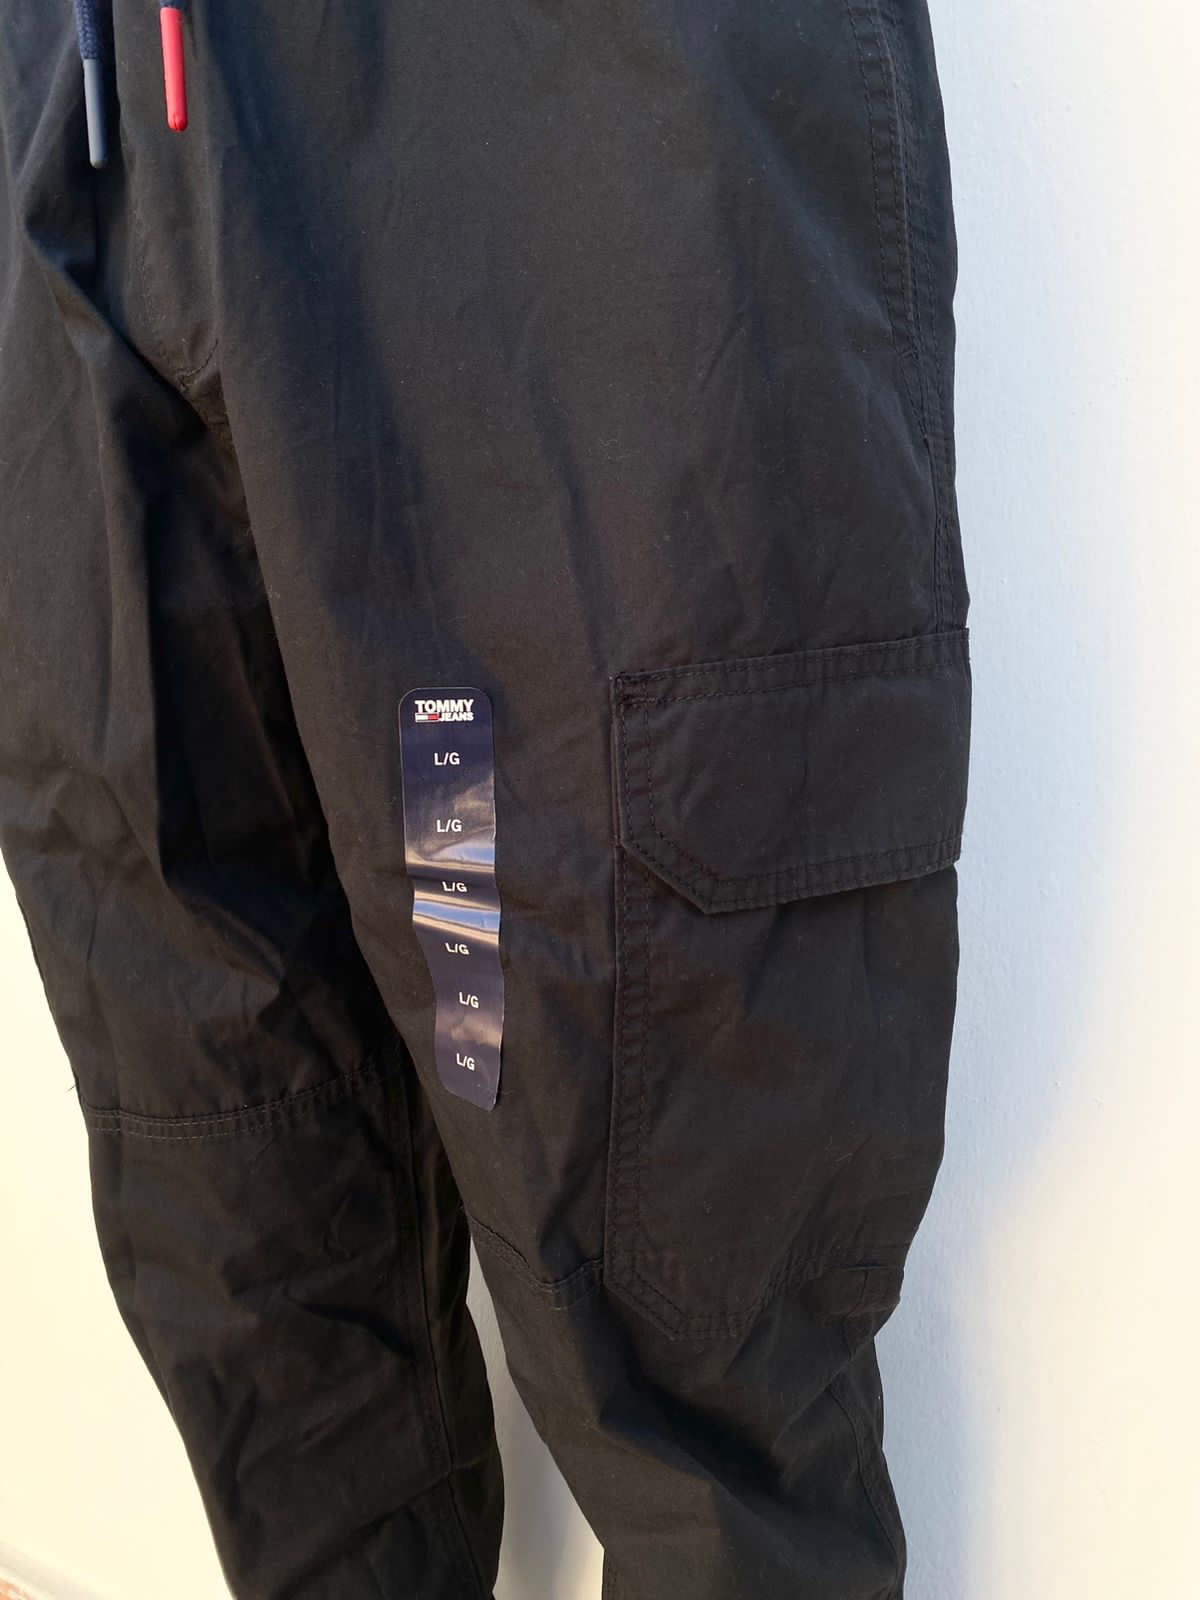 Jogger pantalón Tommy Hilfiger original negro con lazos en azul marino.